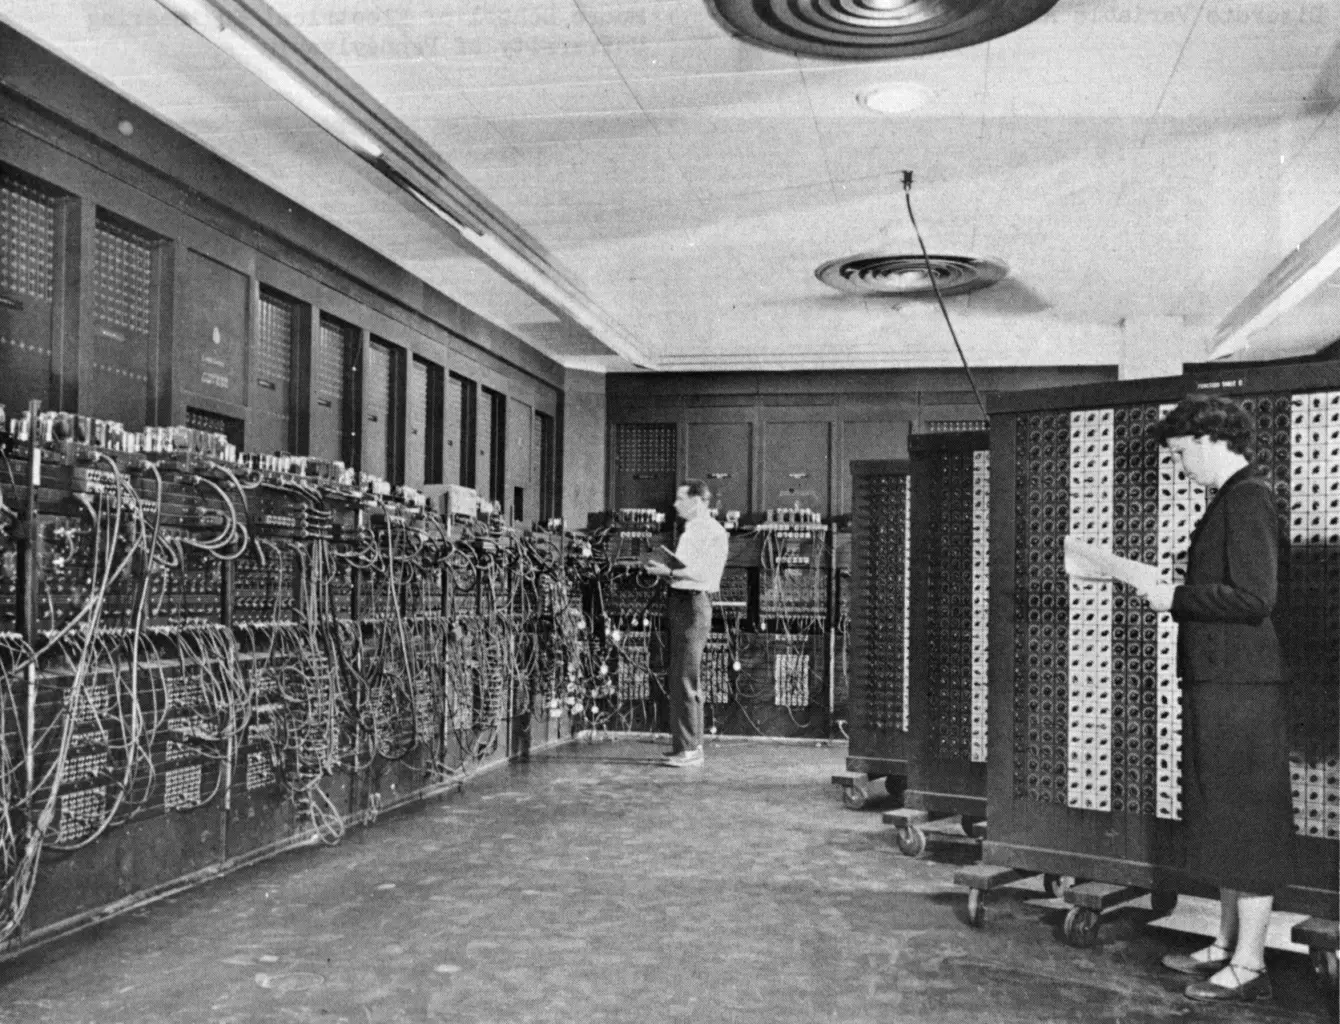 ENIAC, el primer ordenador electrónico de la historia